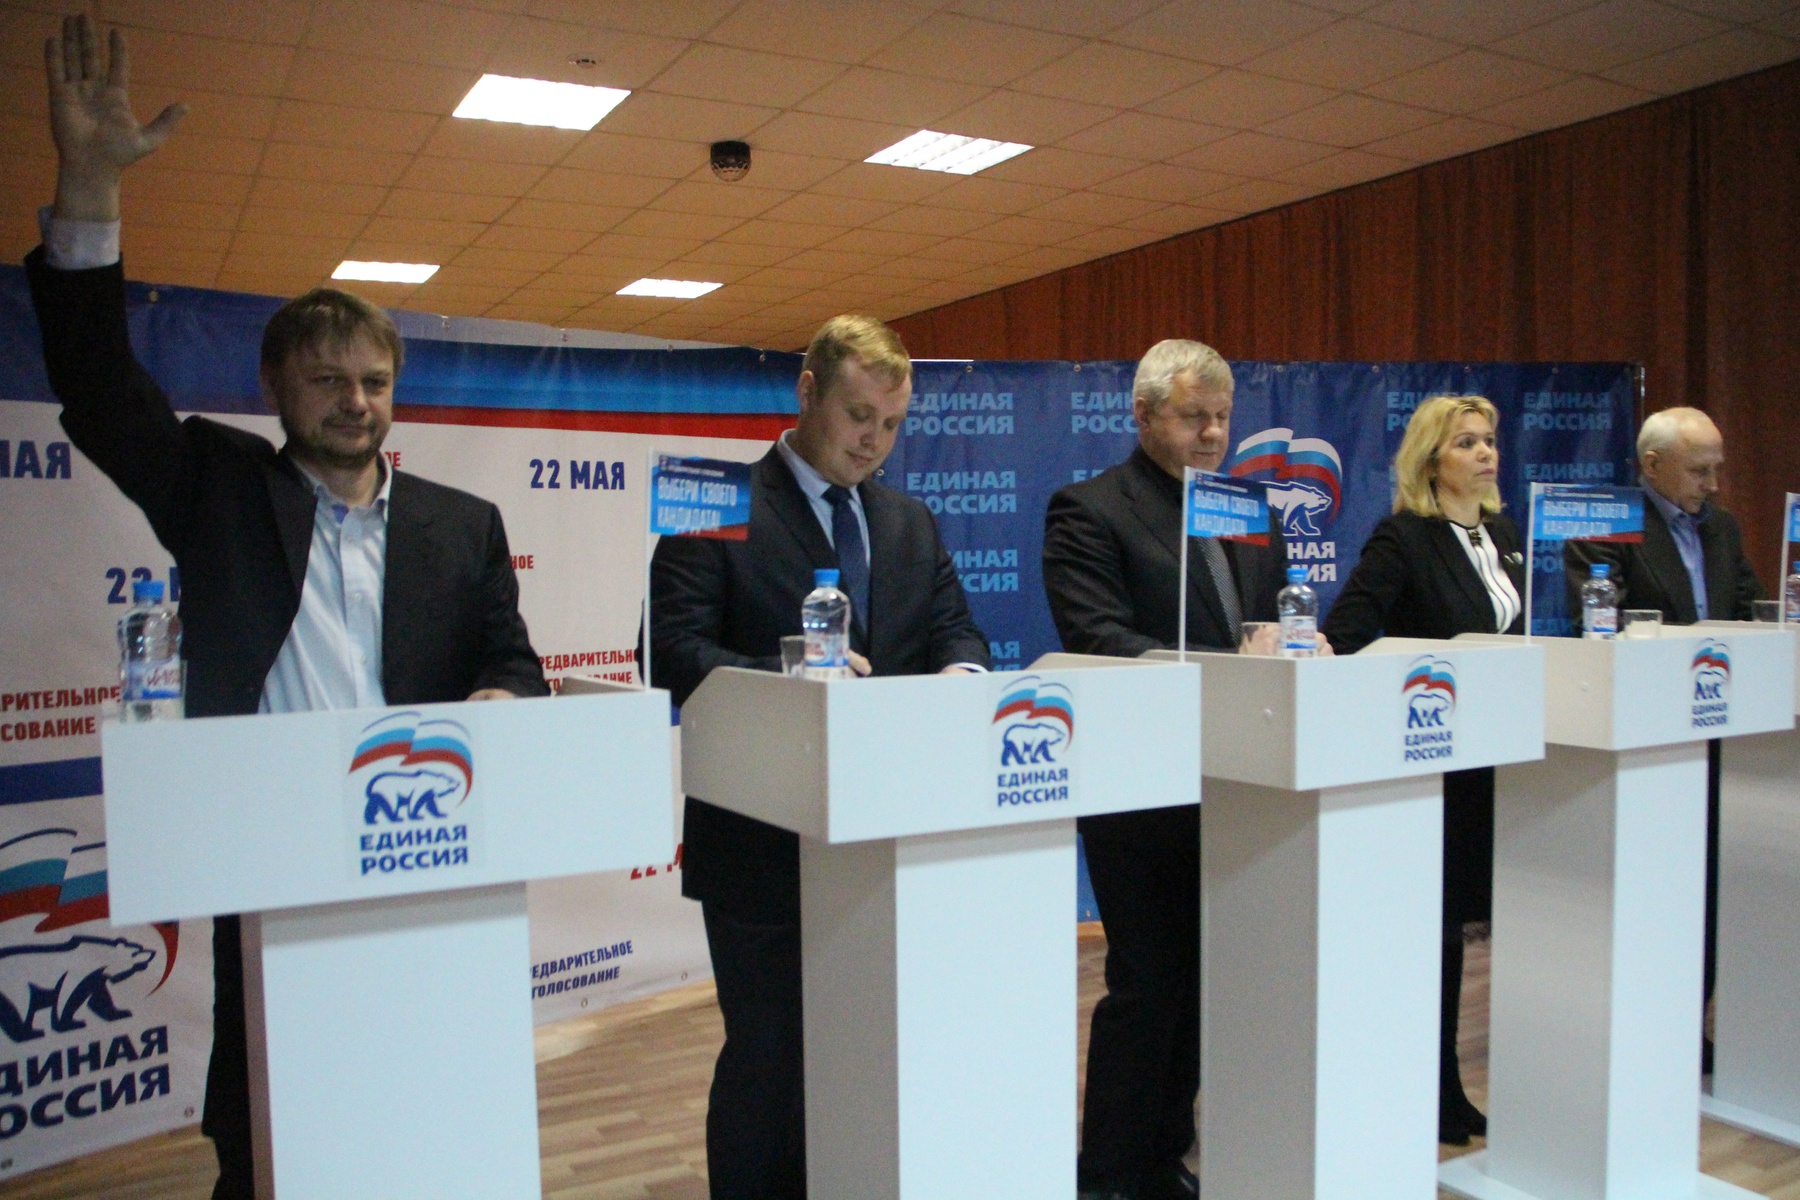    Дебаты участников предварительного голосования в регионах РФ. Тульская область